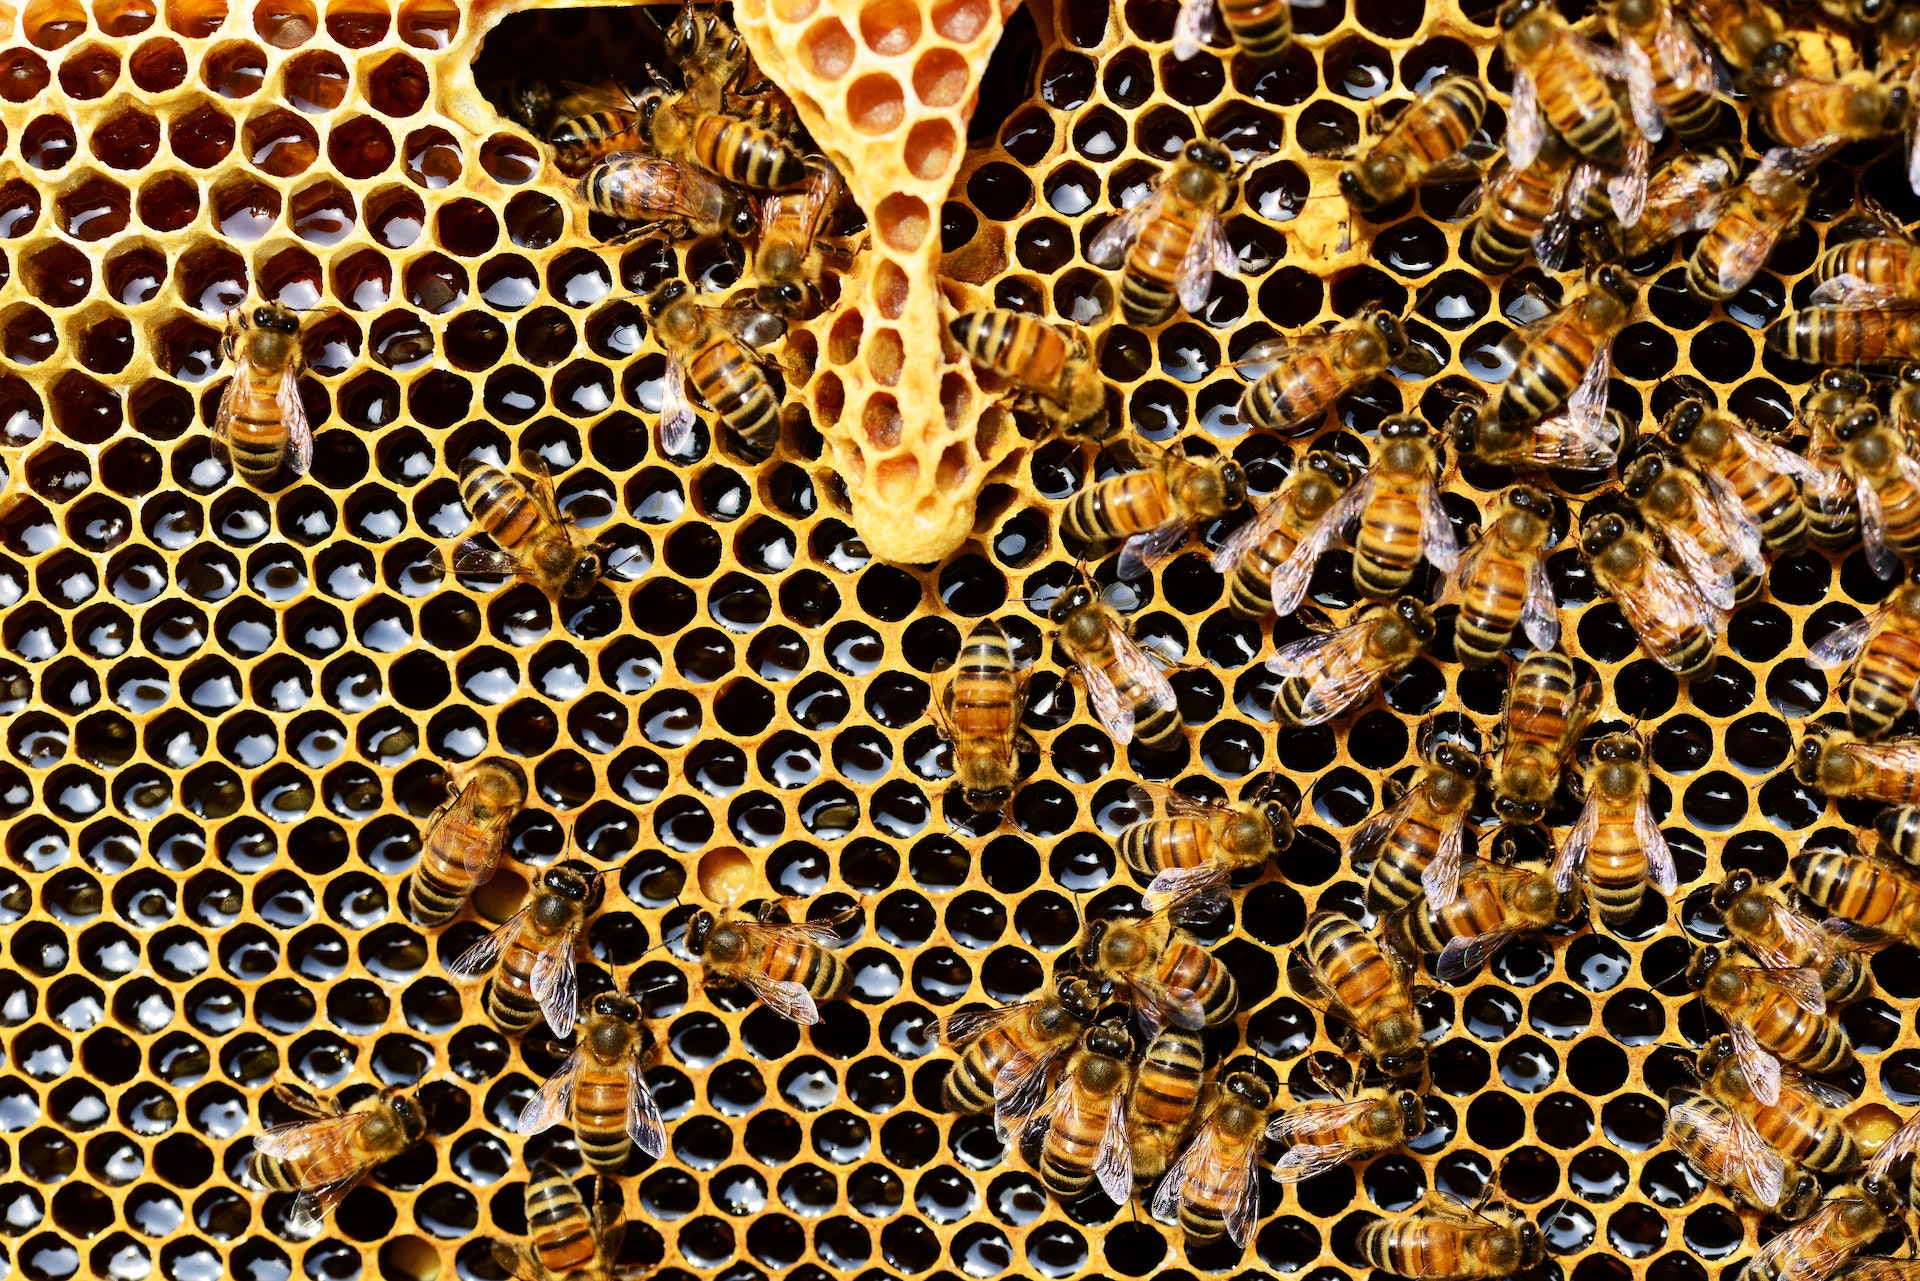 Nella Casa della Salute di Roma sono state trovate circa 50 mila api in un foro sotto l’impianto di condizionamento.